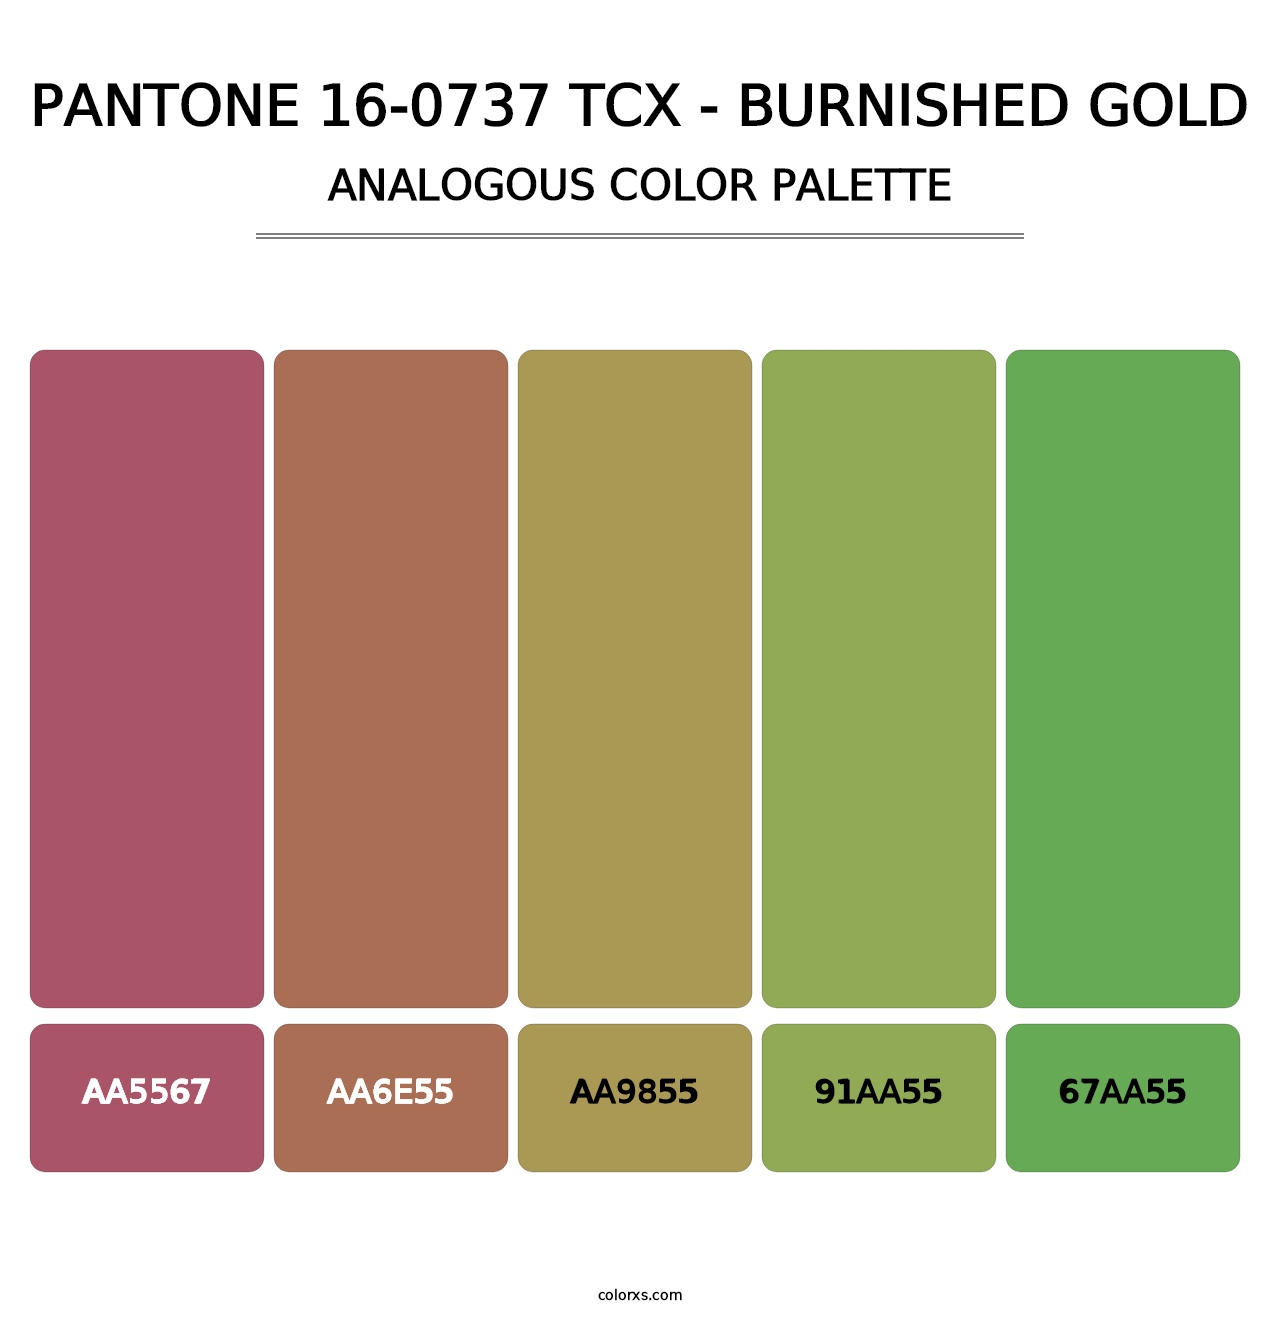 PANTONE 16-0737 TCX - Burnished Gold - Analogous Color Palette